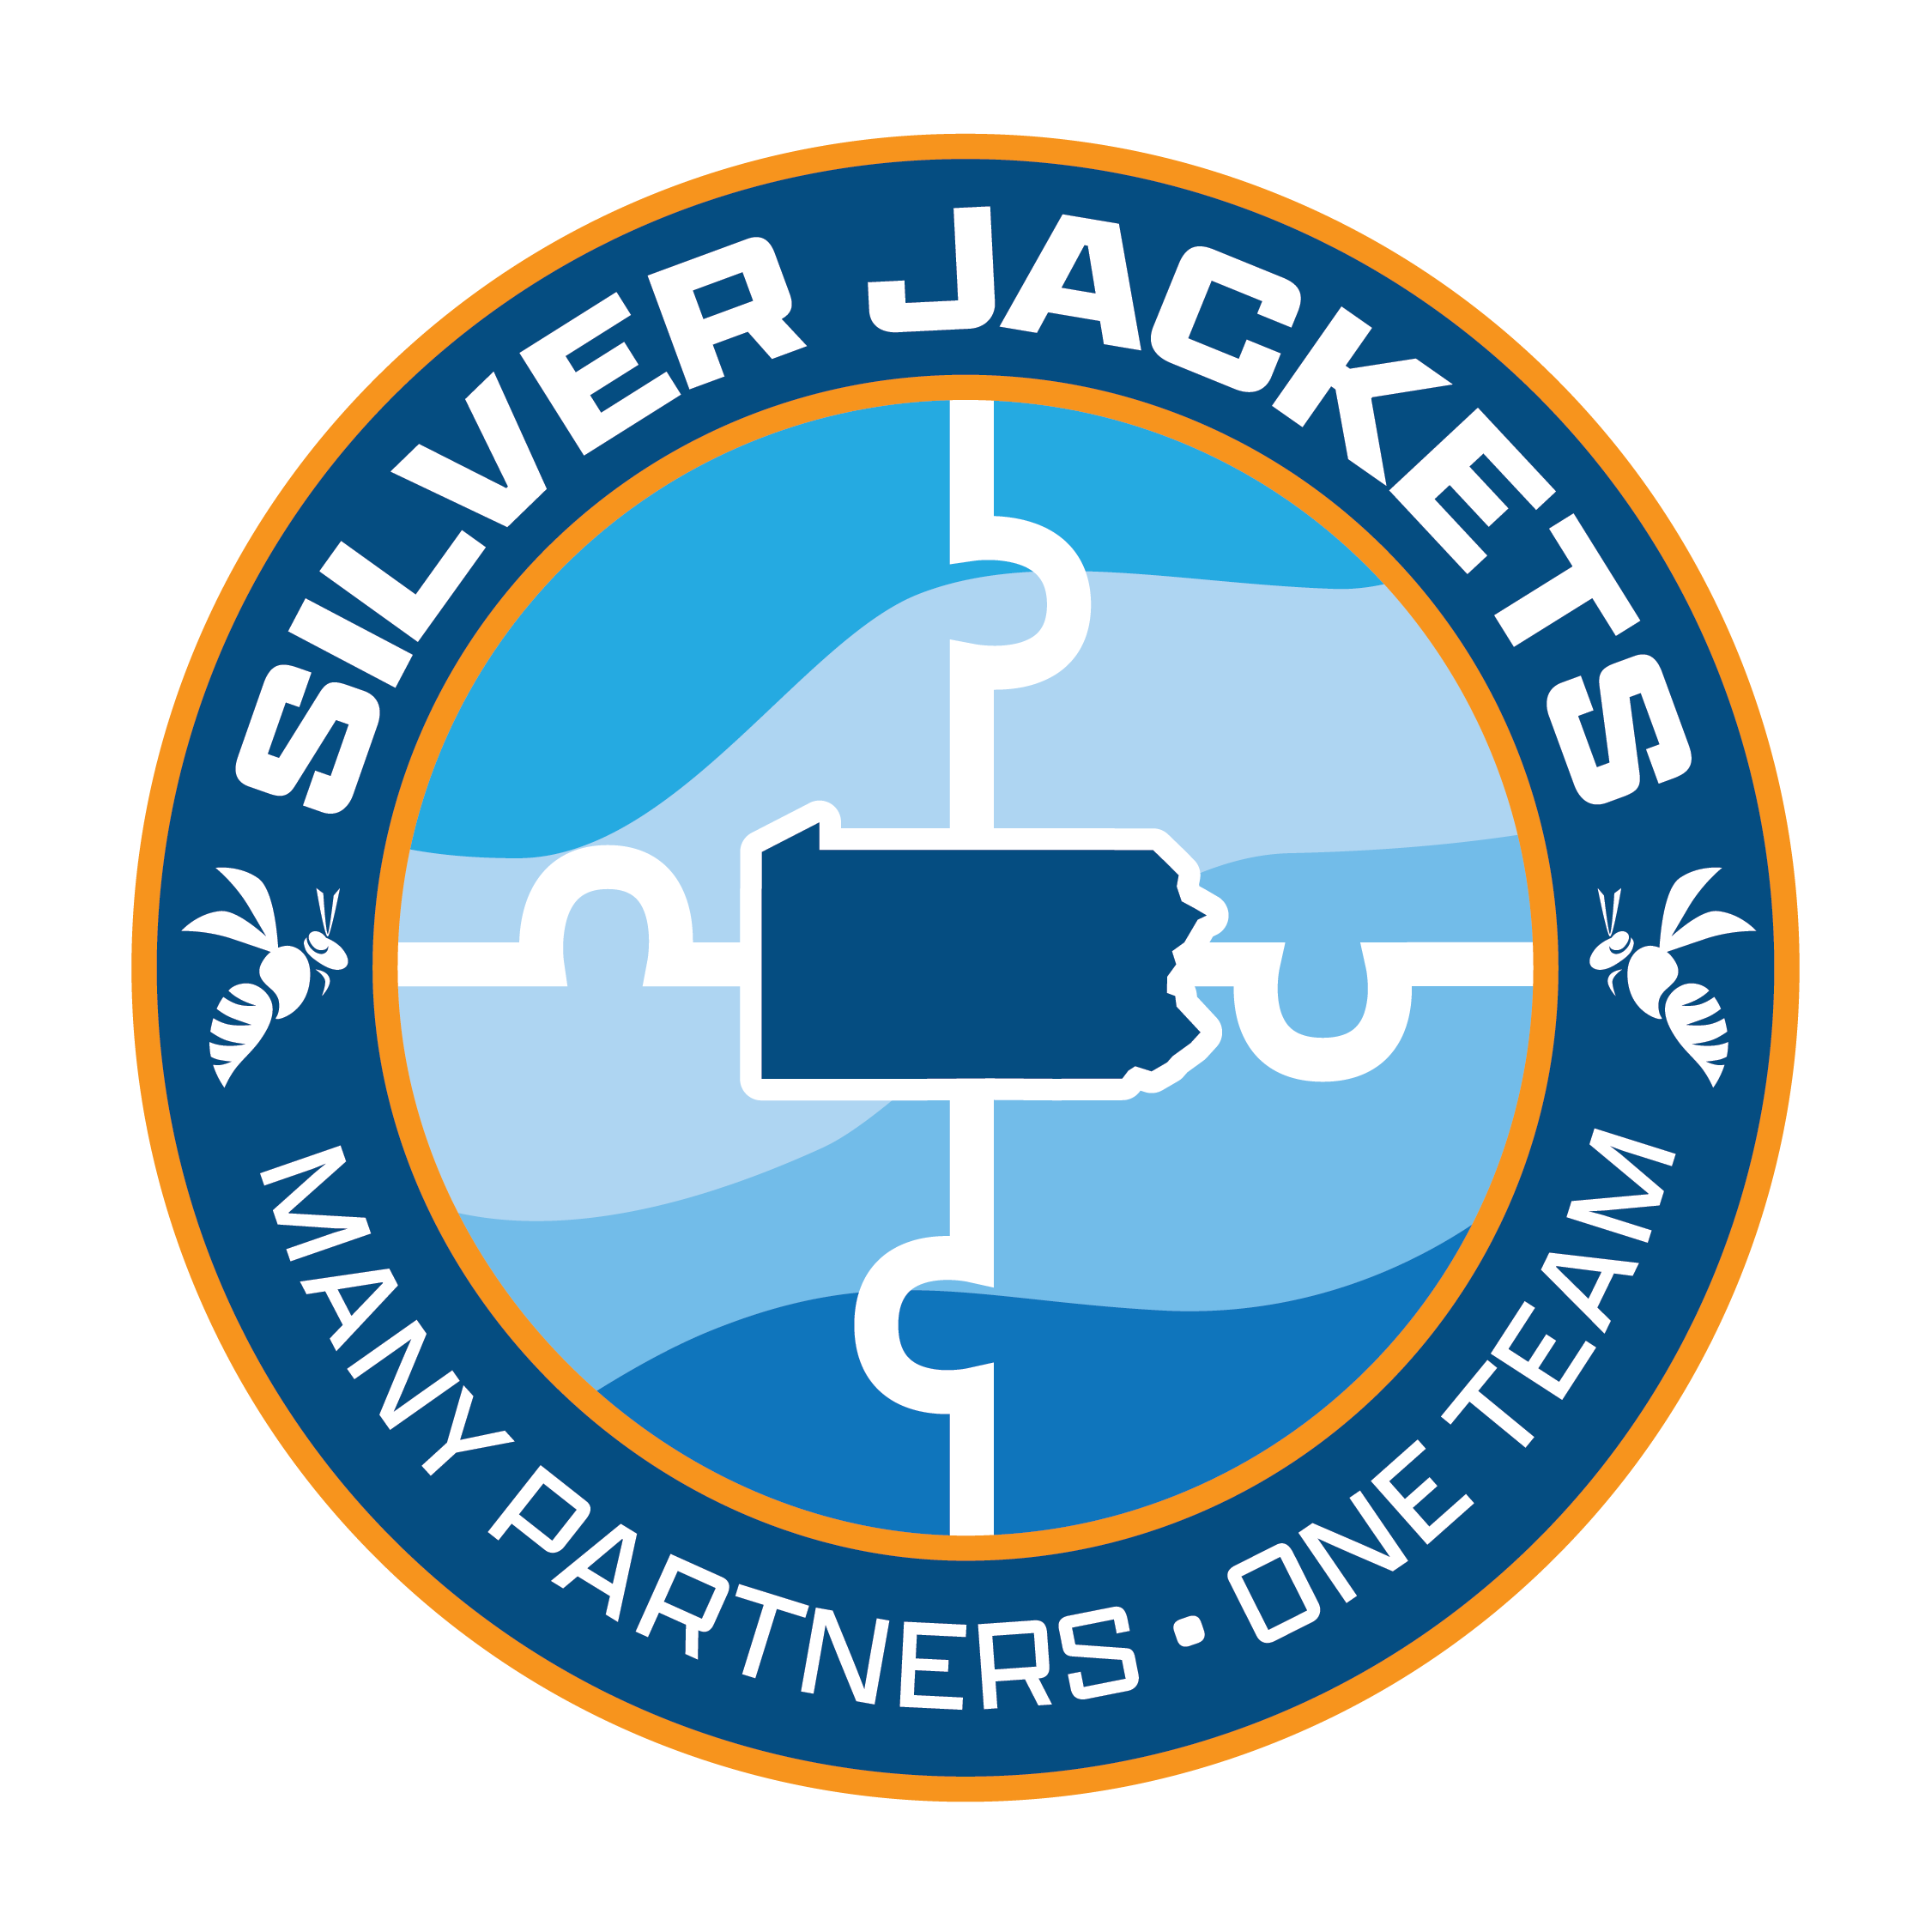 Pennsylvania Silver Jackets logo